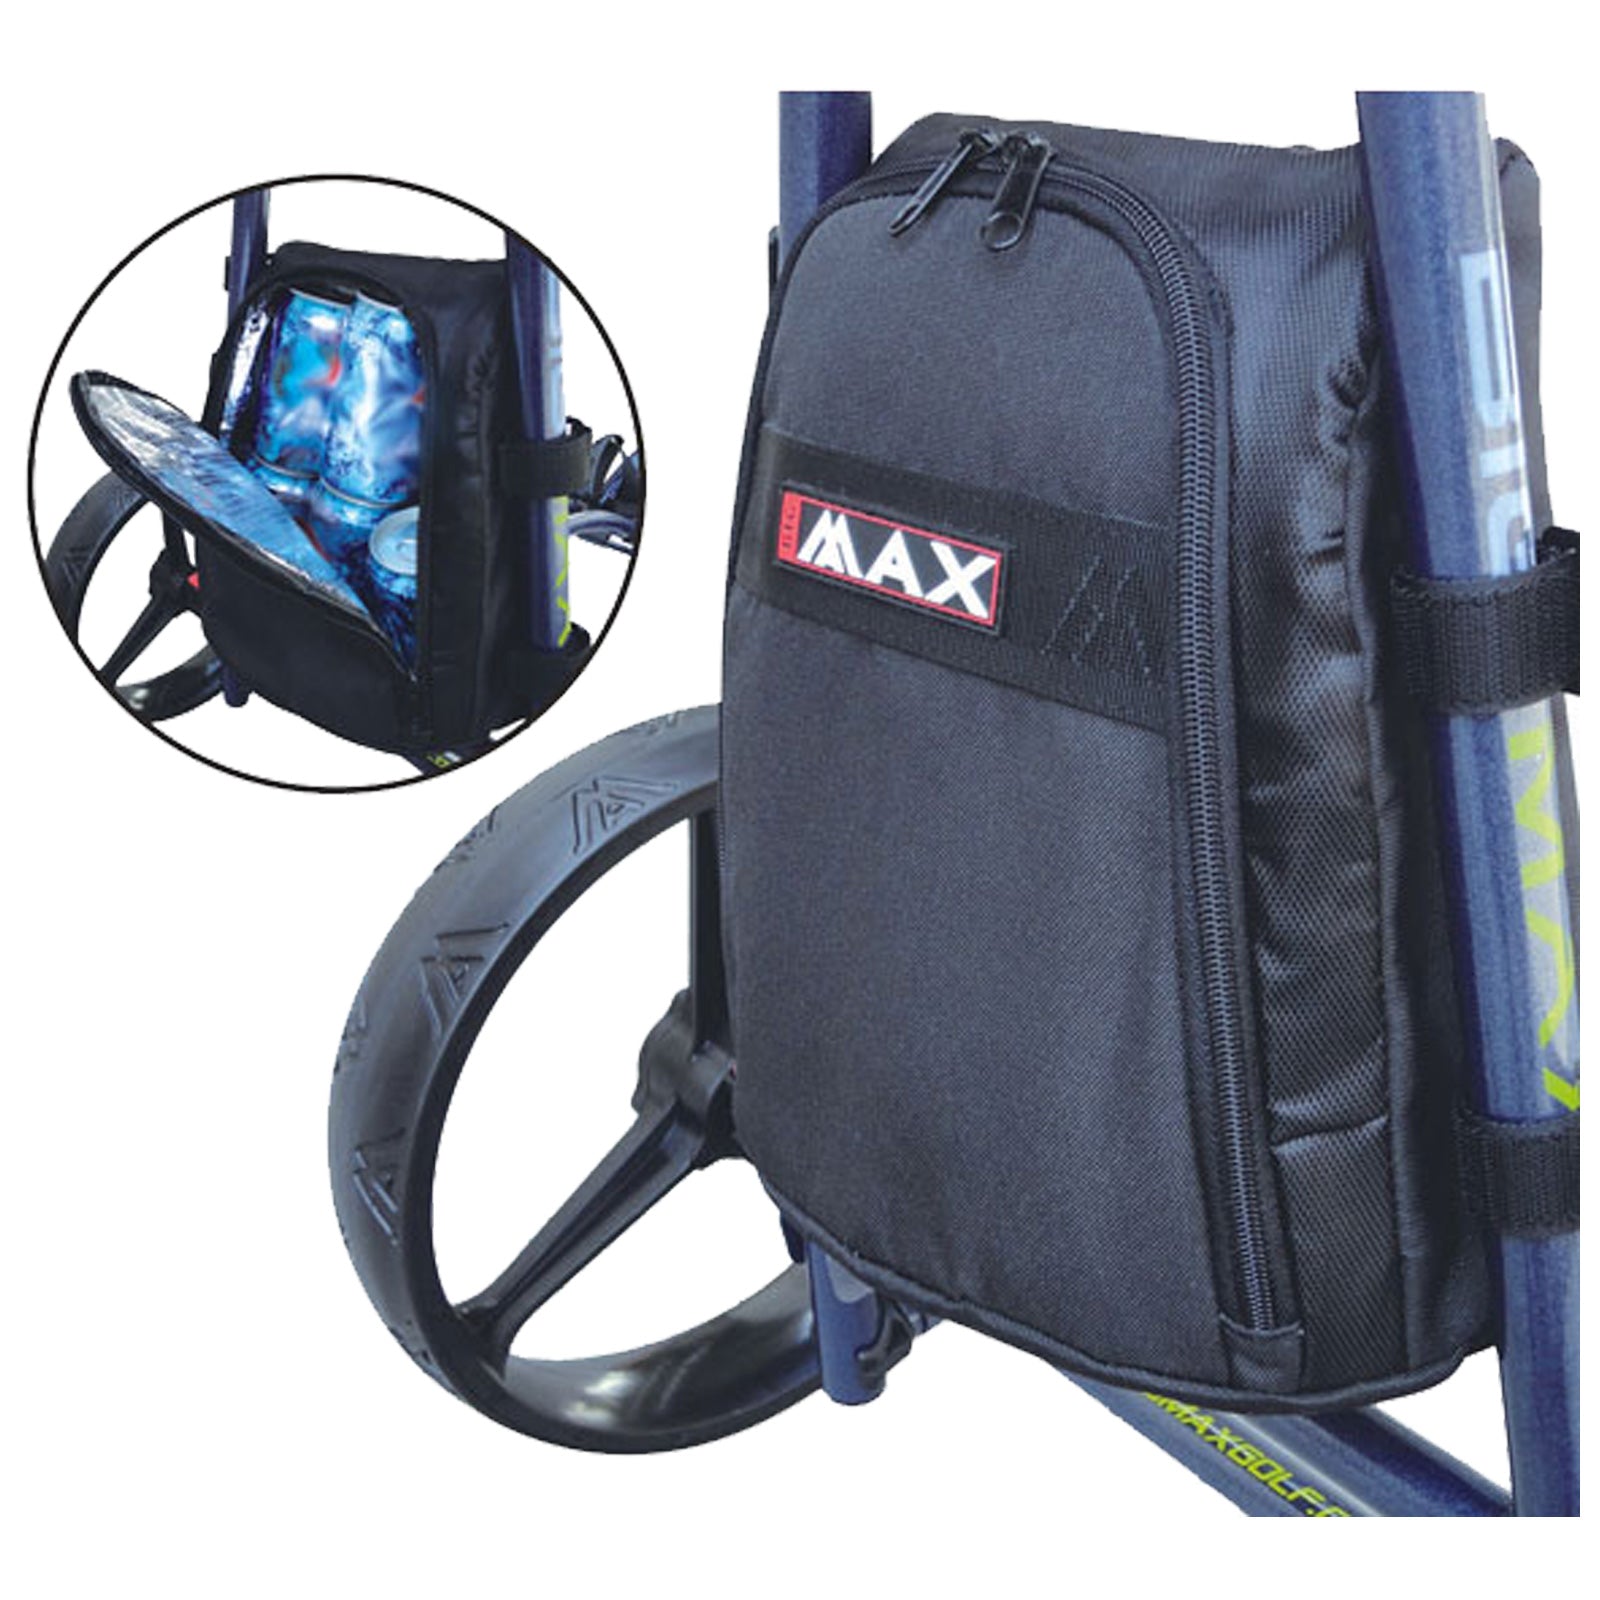 Big Max Golf Trolley Cooler Bag